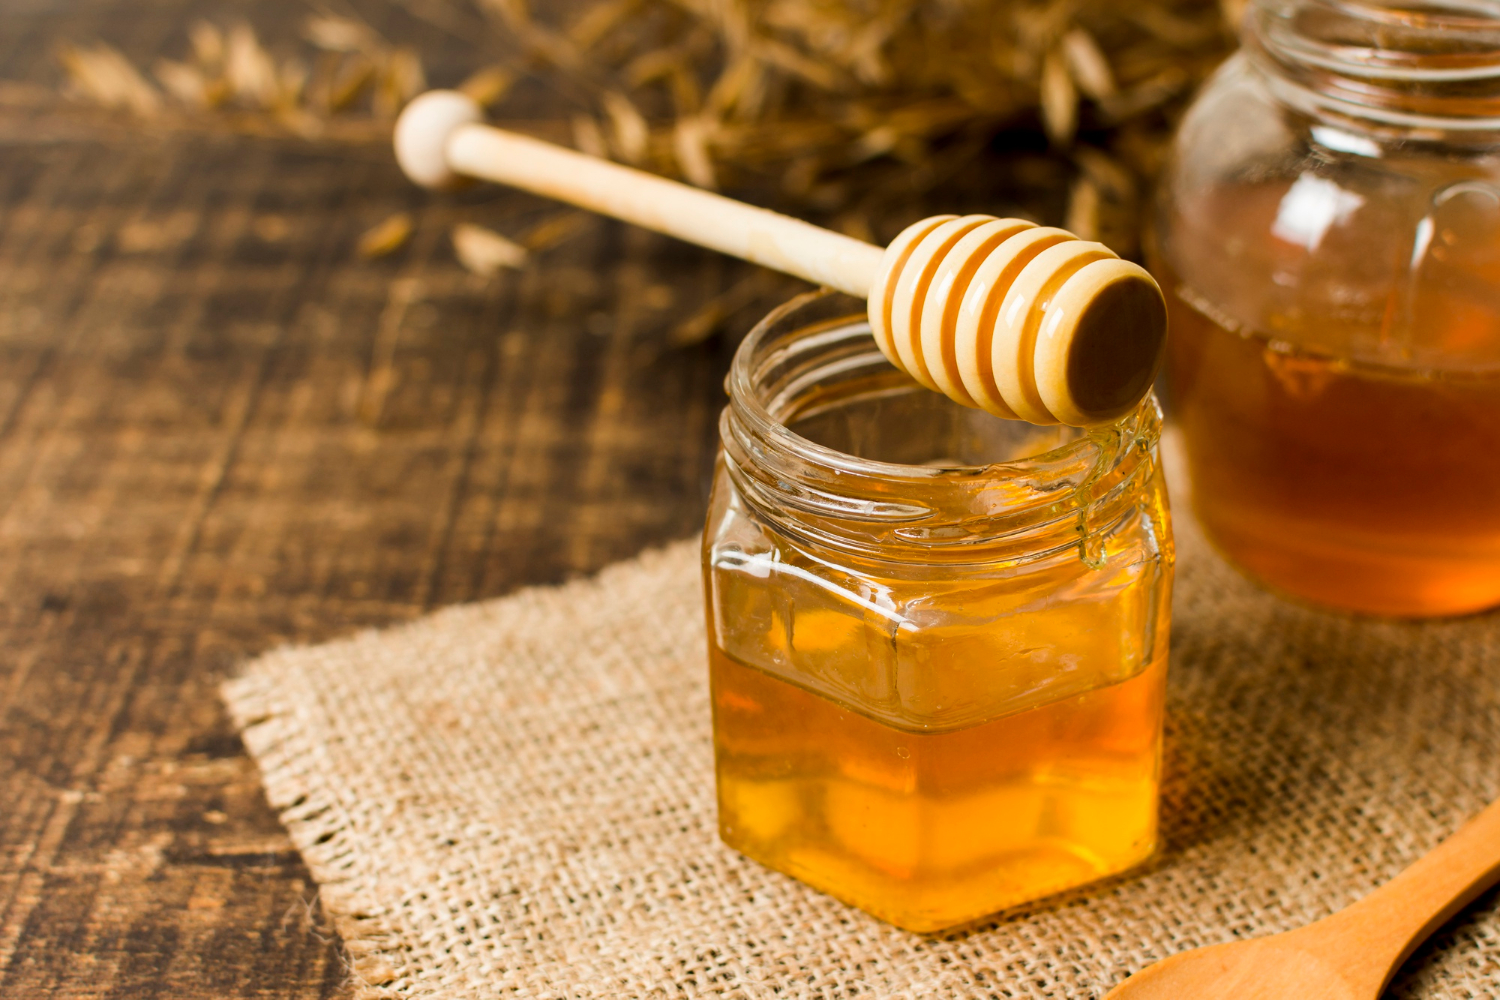  Minden méz másra jó – ezért (is) vigyázzunk a méhekre!